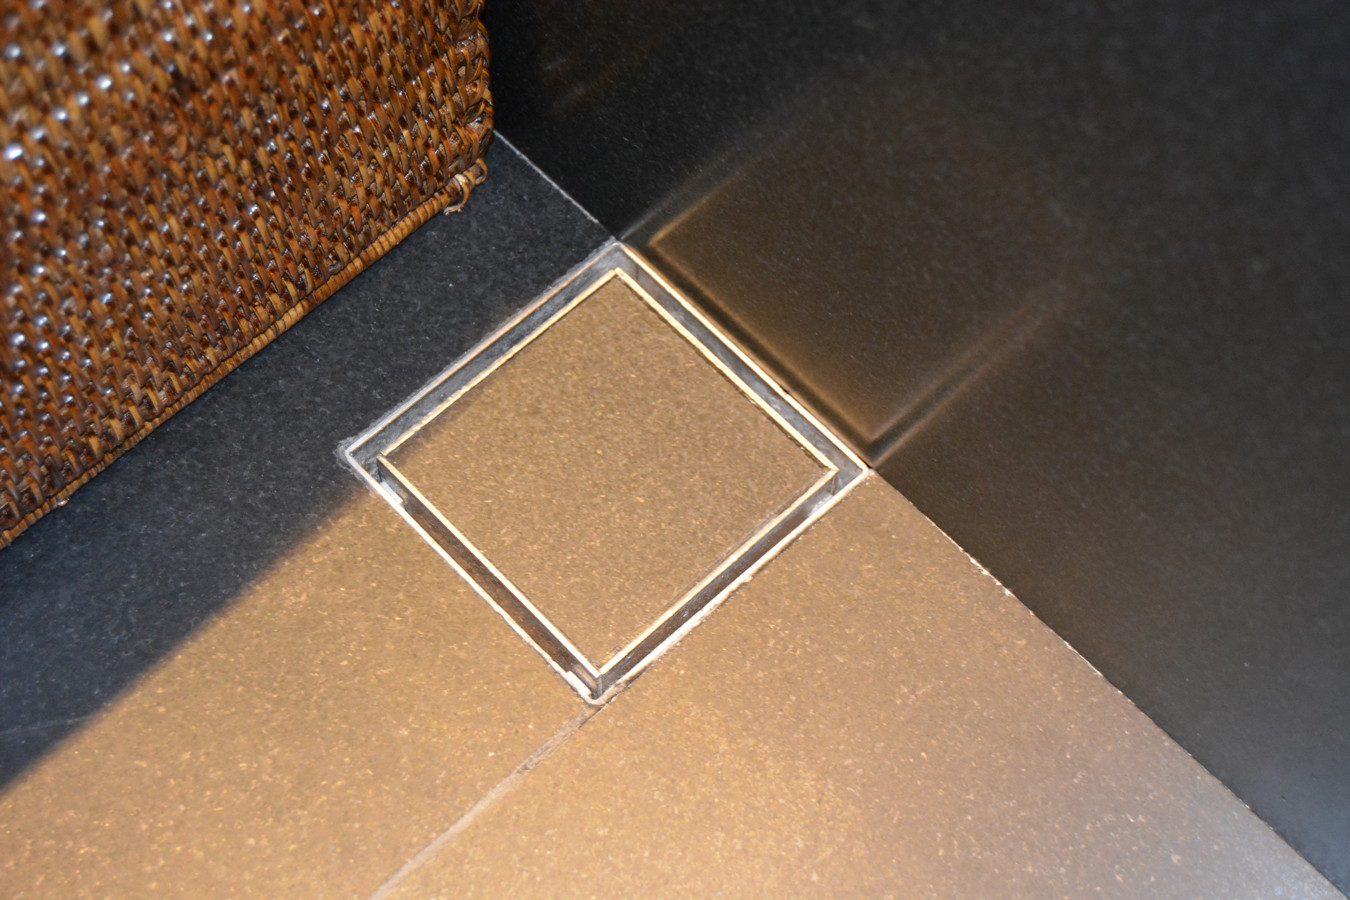 Tile-type floor drain in stainless steel